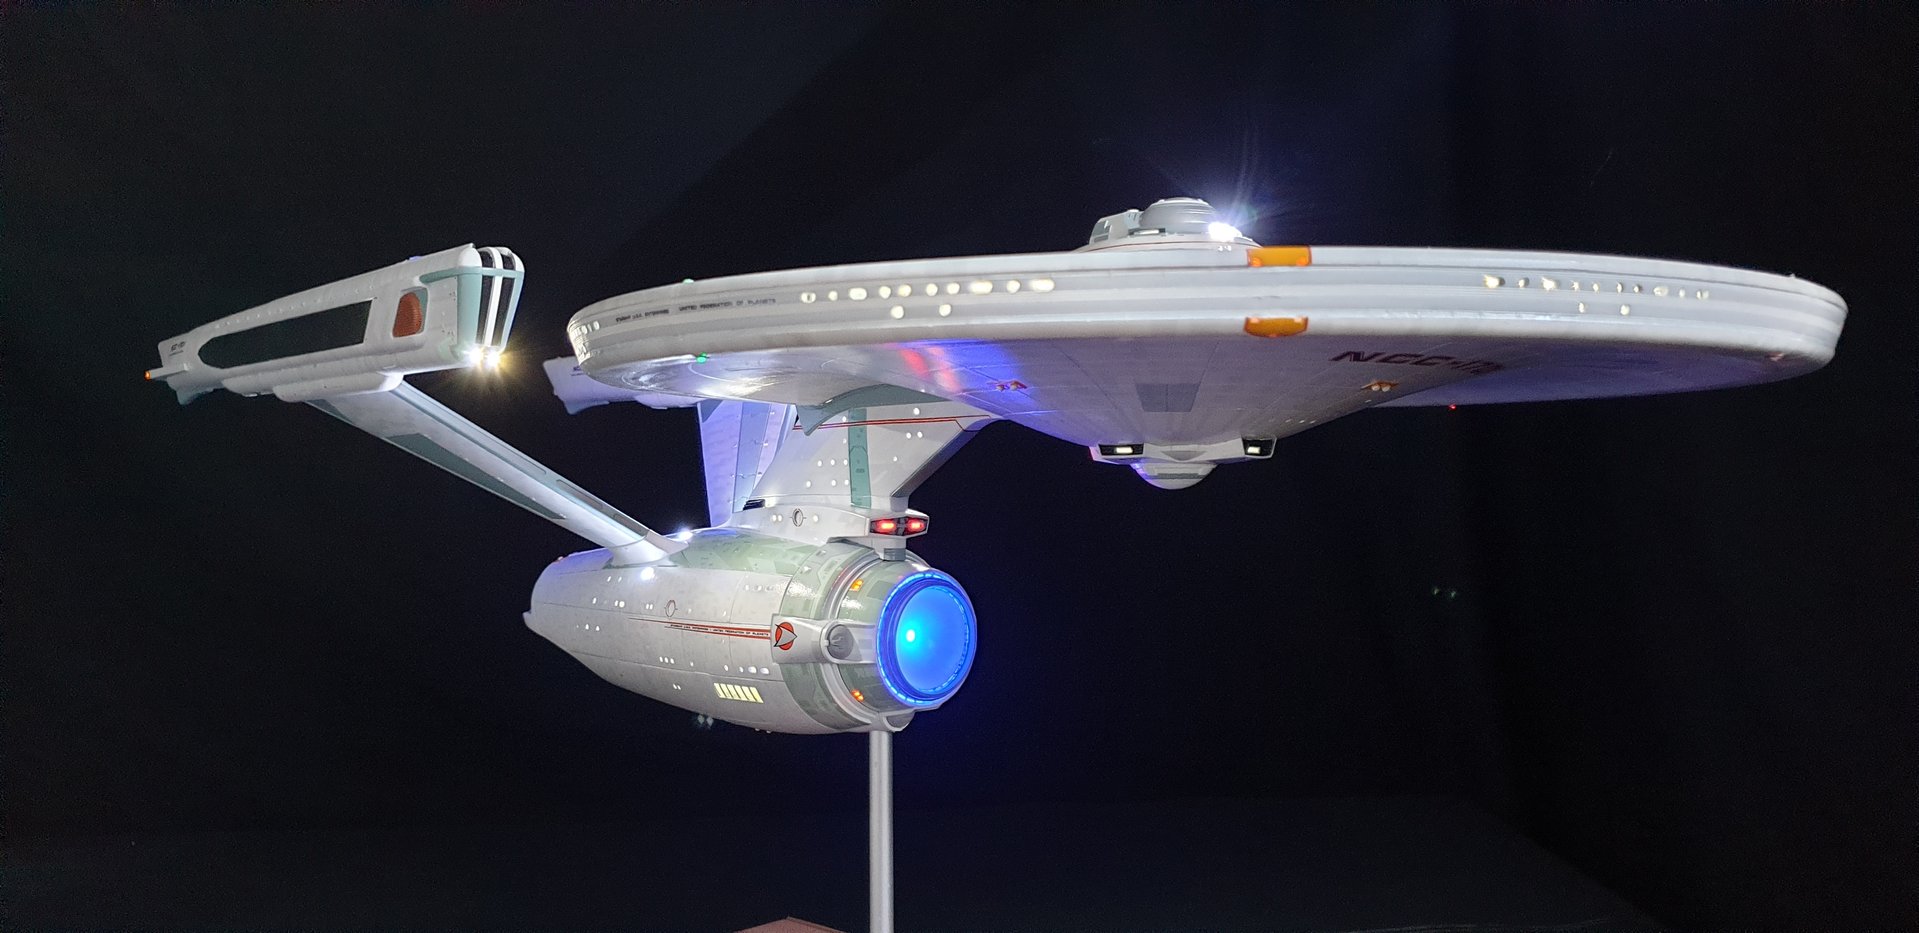 1/350 U.S.S. Enterprise NCC-1701 Refit/A model pro built and lighted